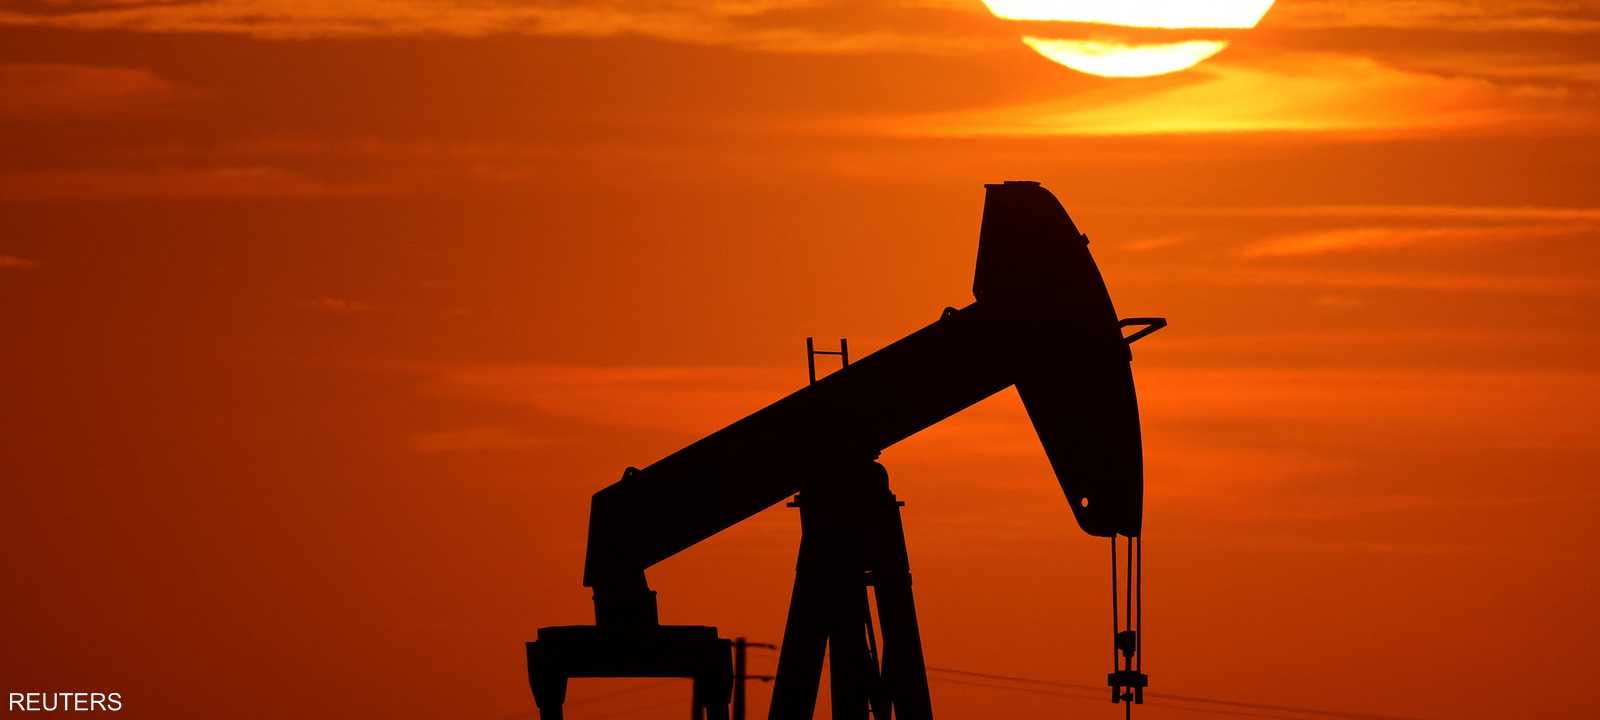 النفط يرتفع بعد قرار "أوبك+" بخفض الإنتاج